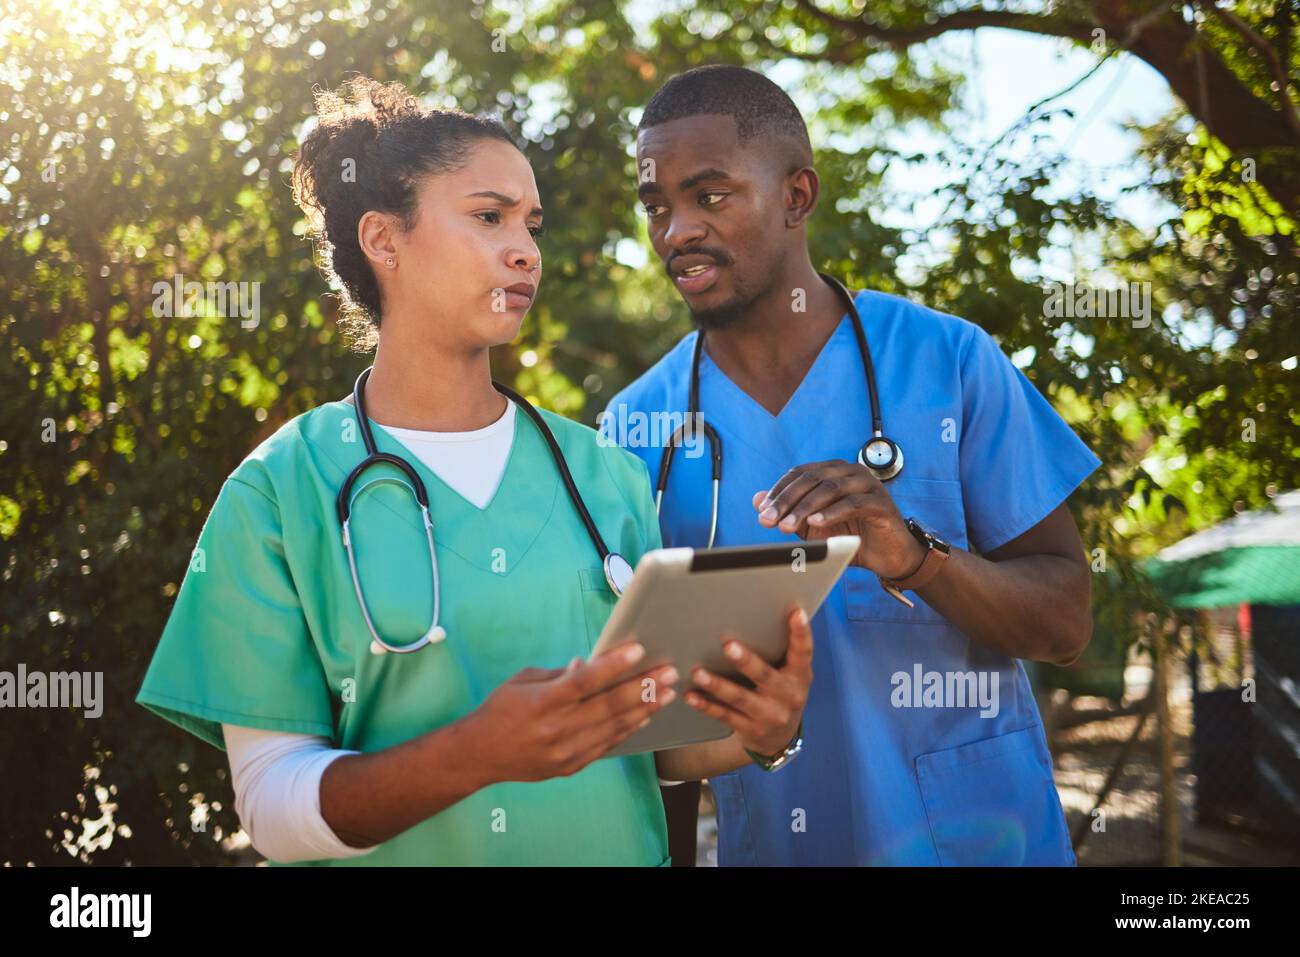 Arzt, Team und Tablette in Gesundheitsdiskussion für ärztliche Verschreibung, Konsultation oder Eingriff in einem Park. Ärzte oder Tierärzte in Stockfoto